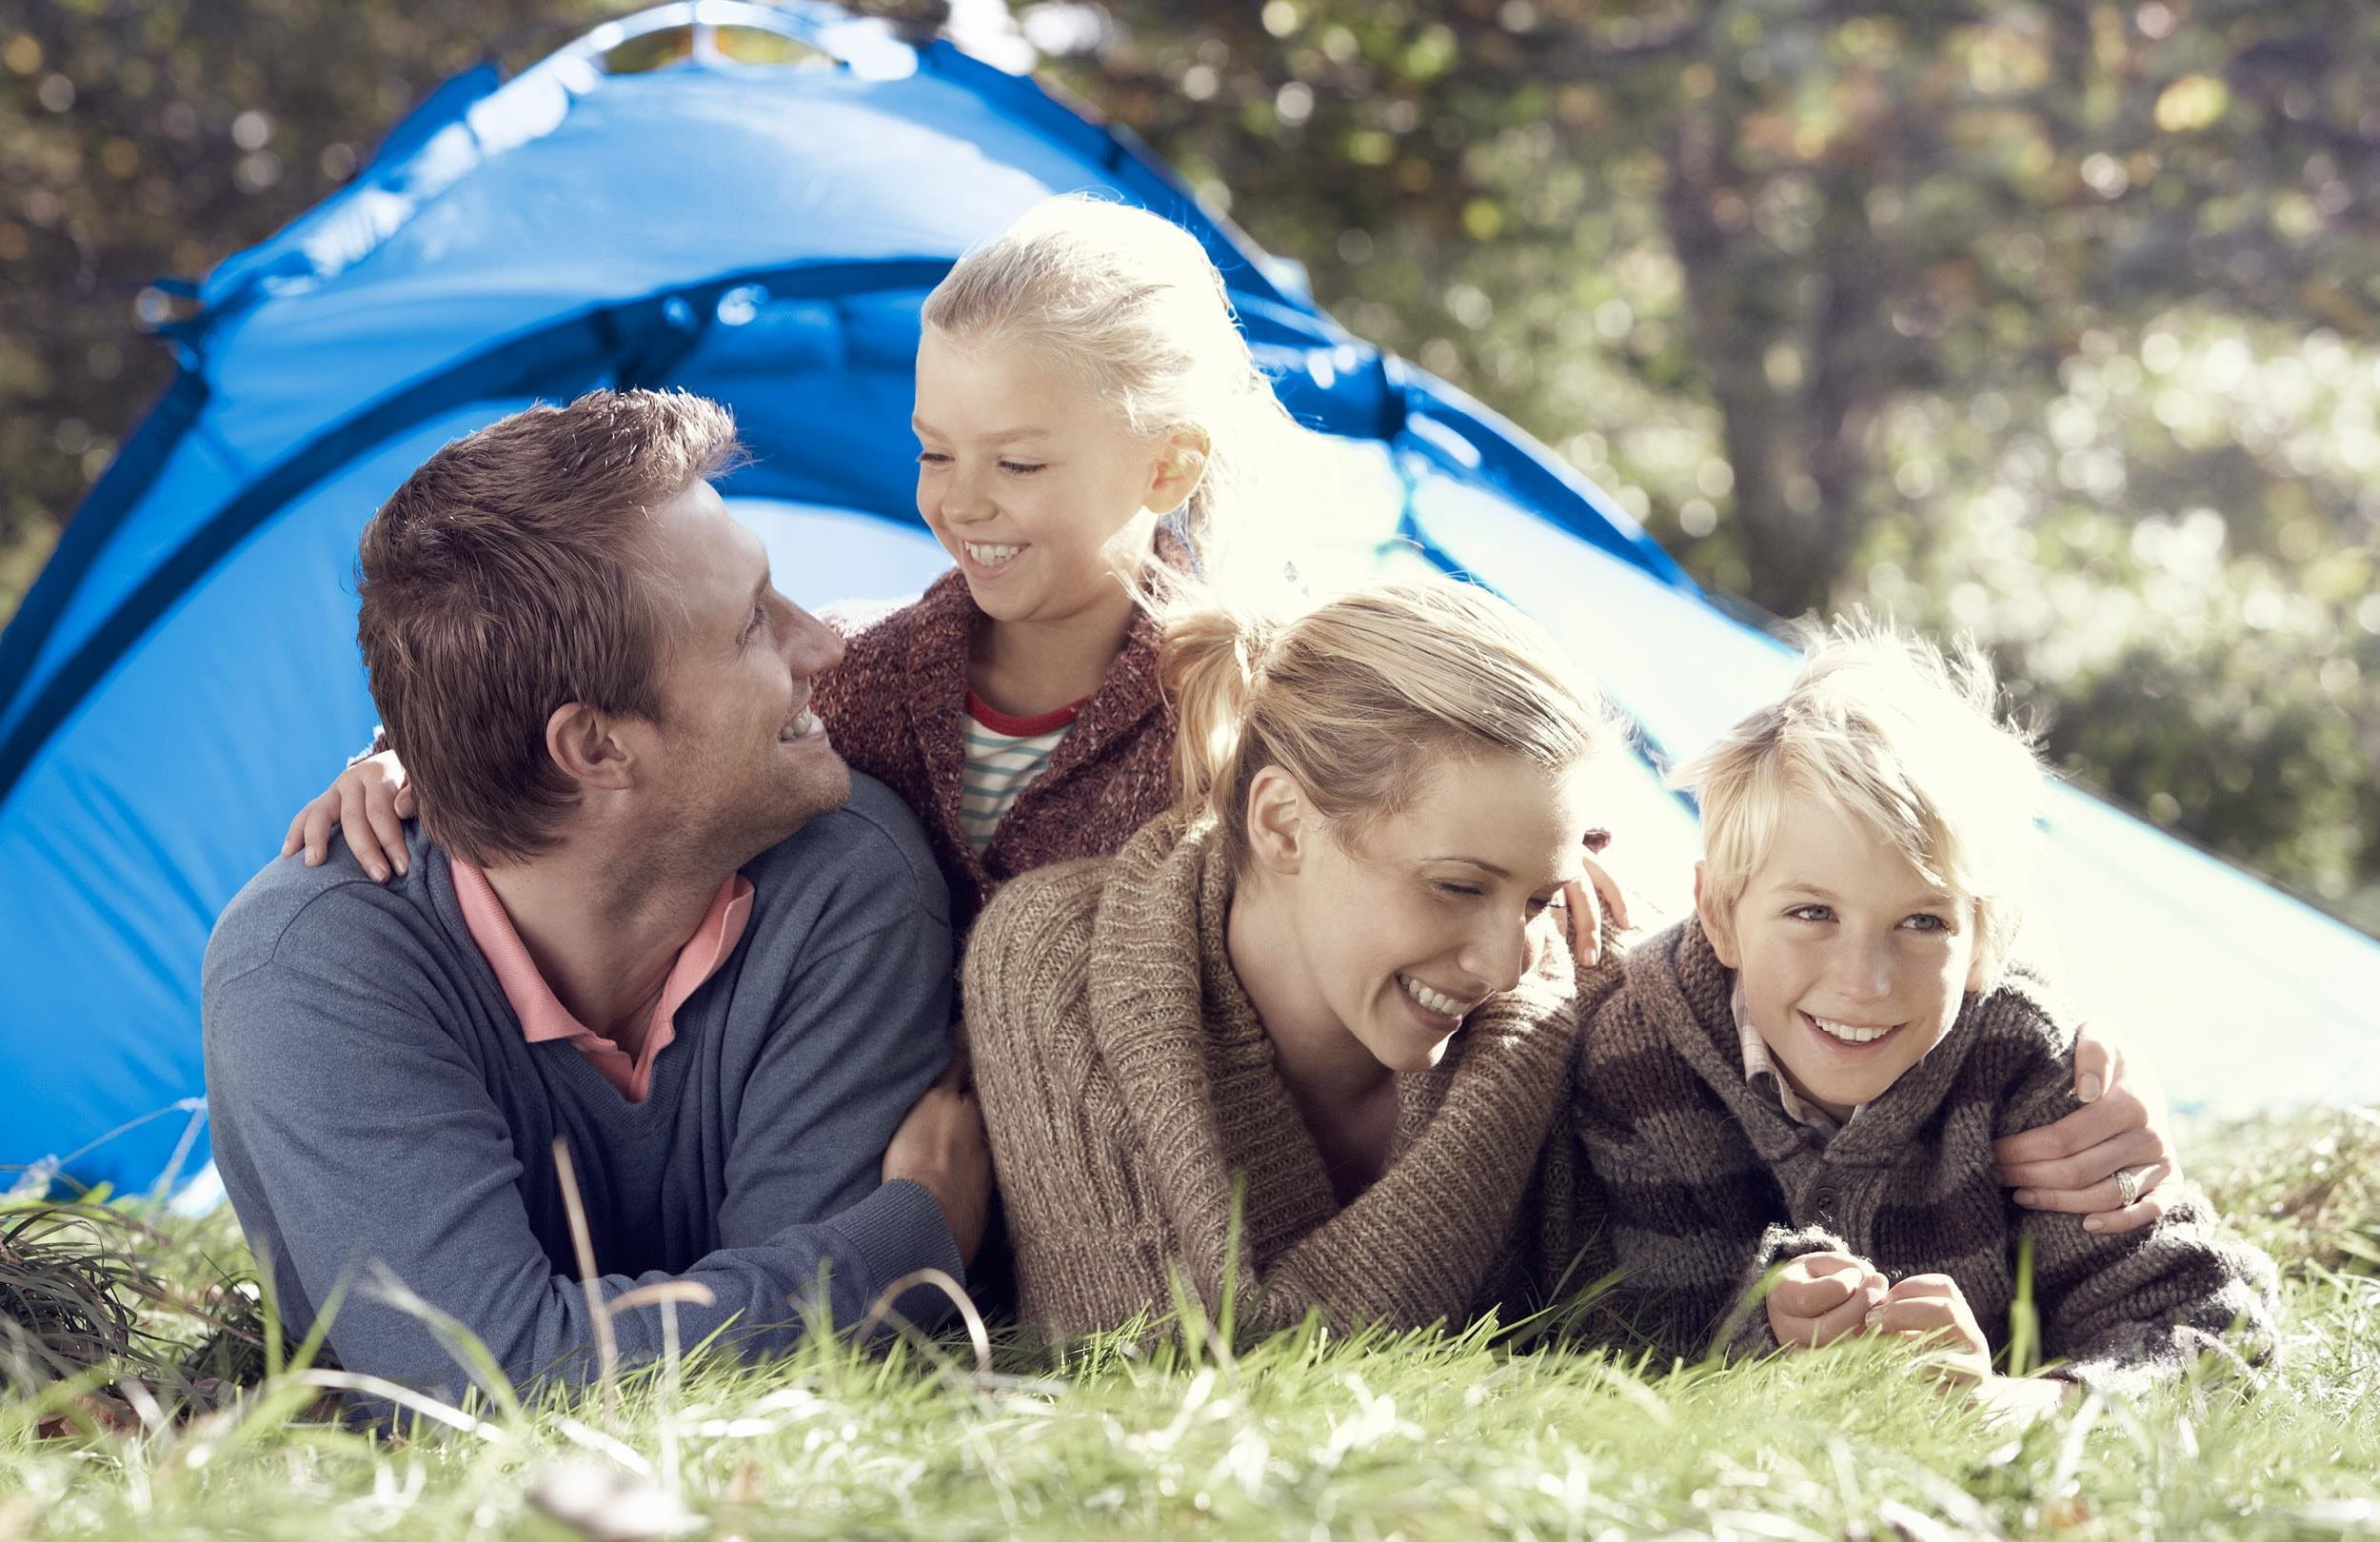 La famiglia è di fronte a una tenda